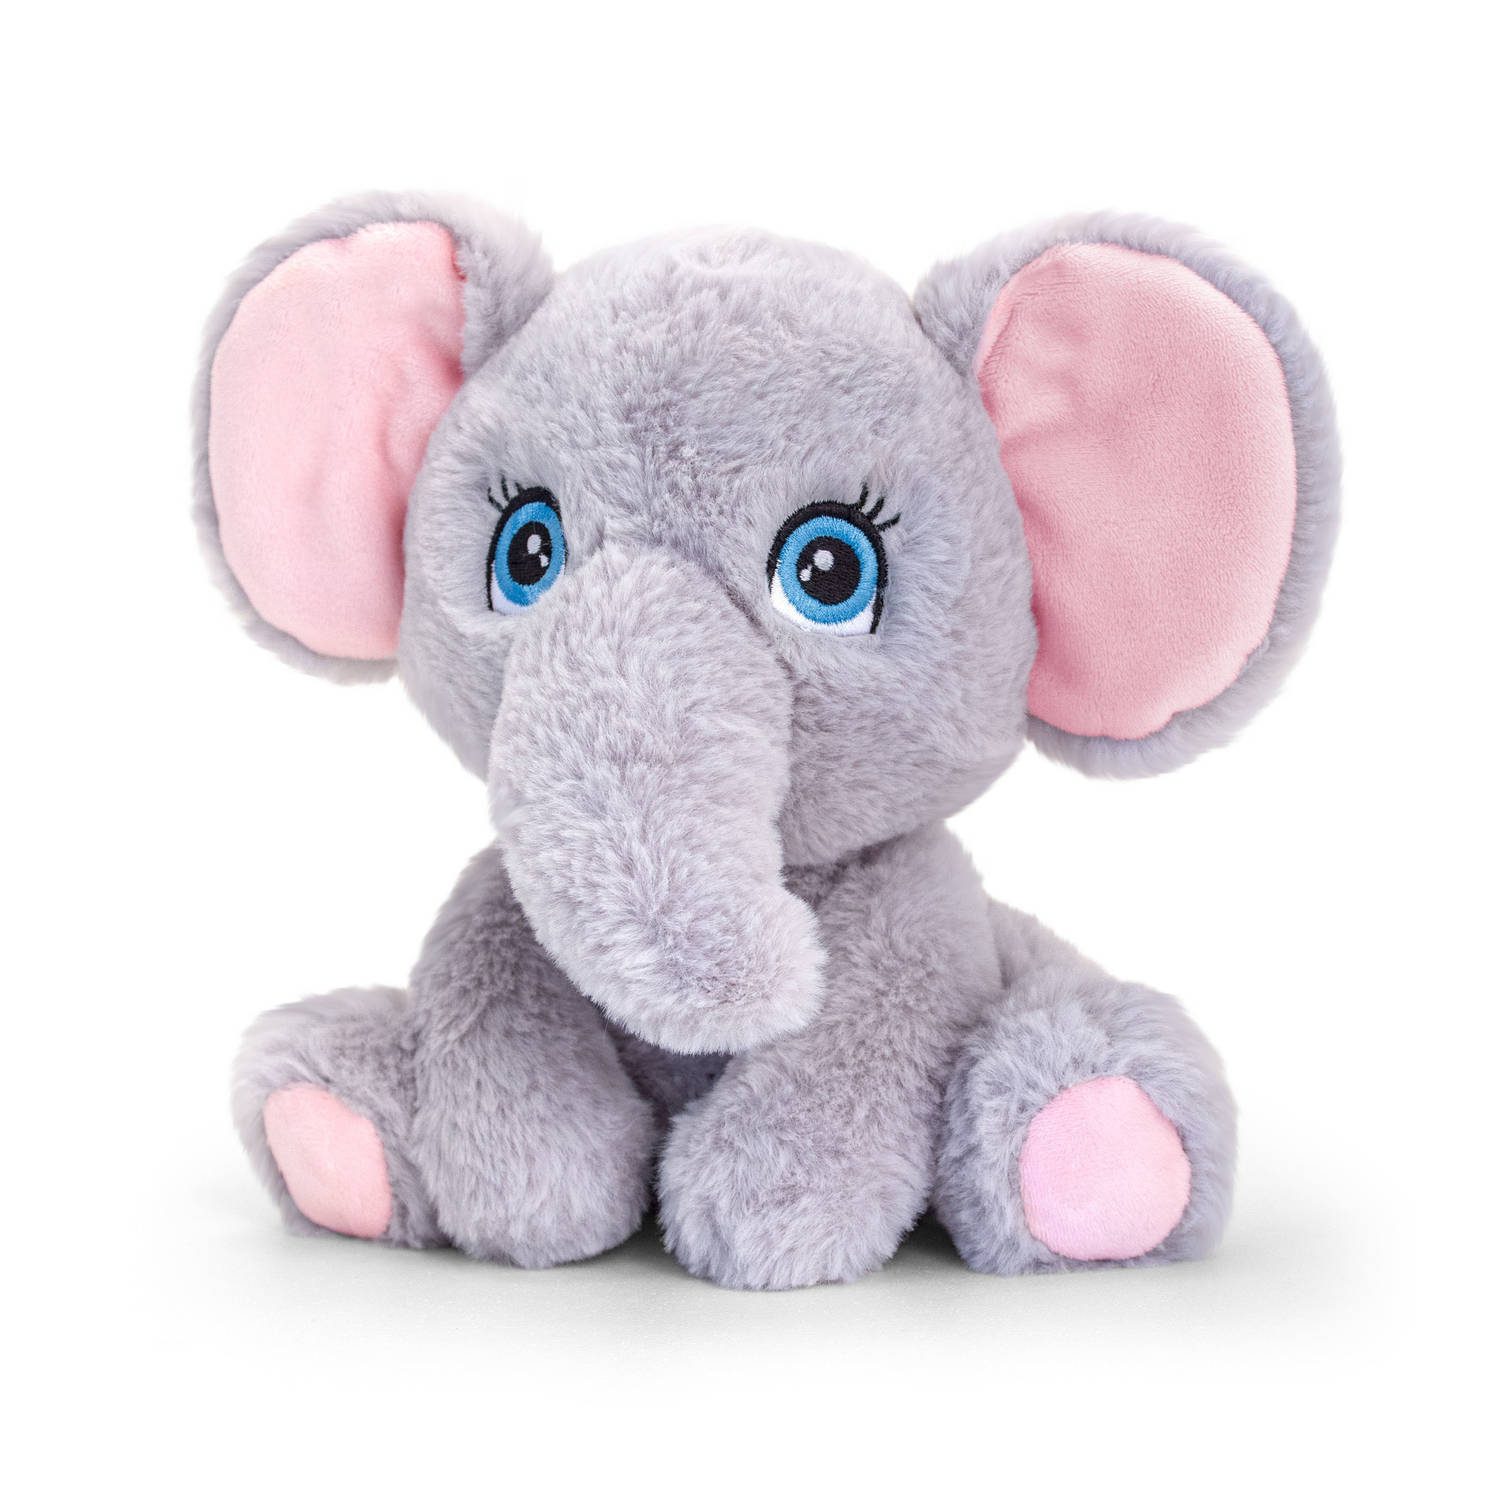 Pluche knuffel dieren olifant 25 cm - Knuffelbeesten speelgoed